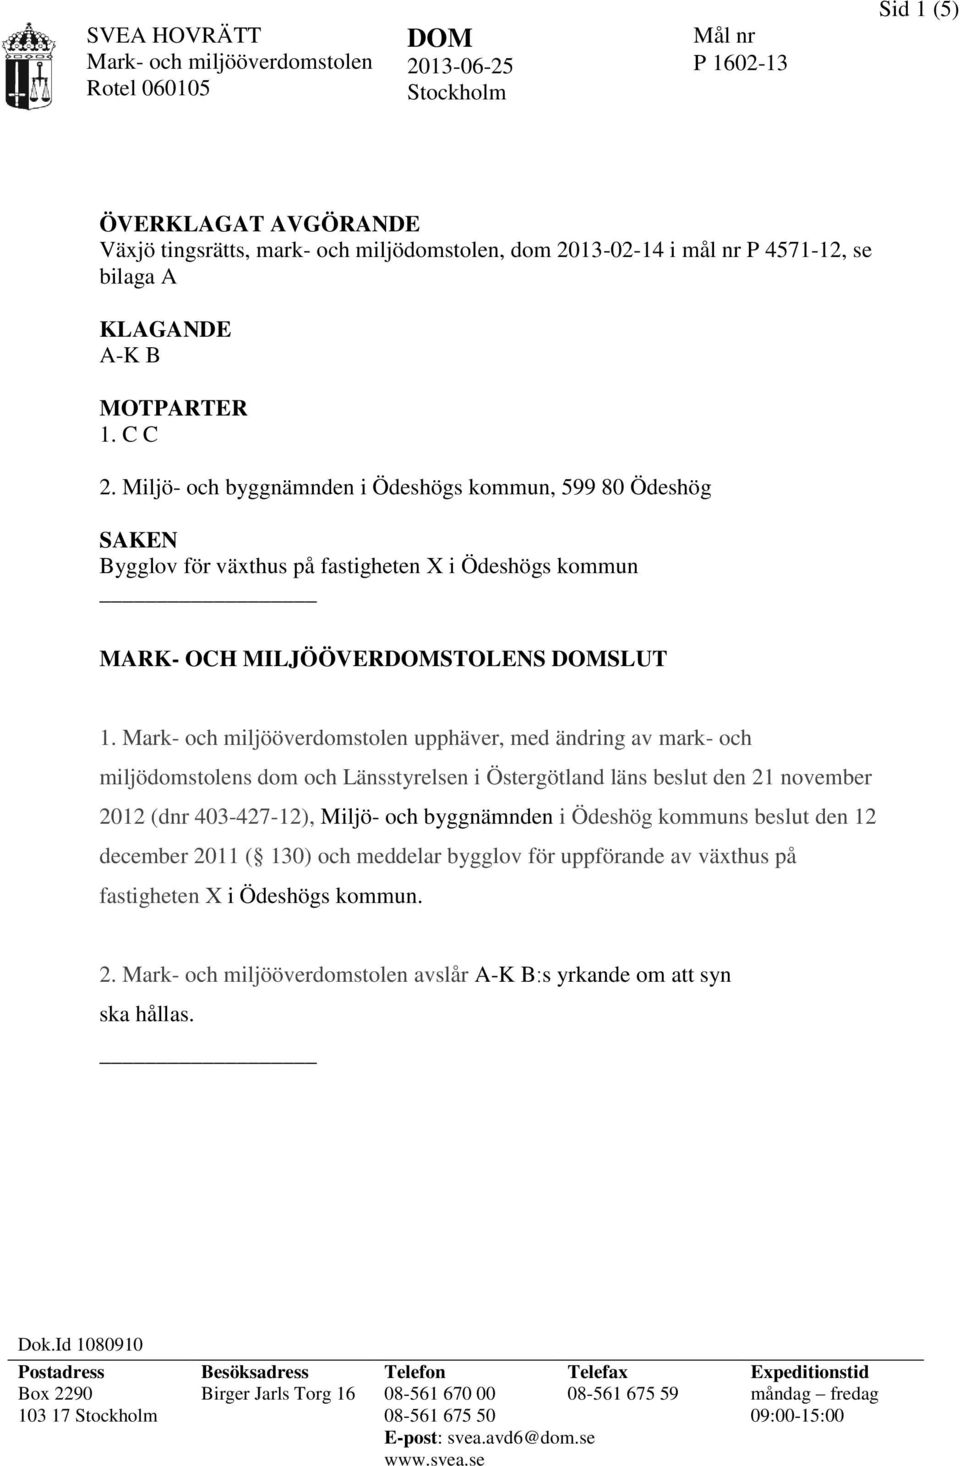 upphäver, med ändring av mark- och miljödomstolens dom och Länsstyrelsen i Östergötland läns beslut den 21 november 2012 (dnr 403-427-12), Miljö- och byggnämnden i Ödeshög kommuns beslut den 12